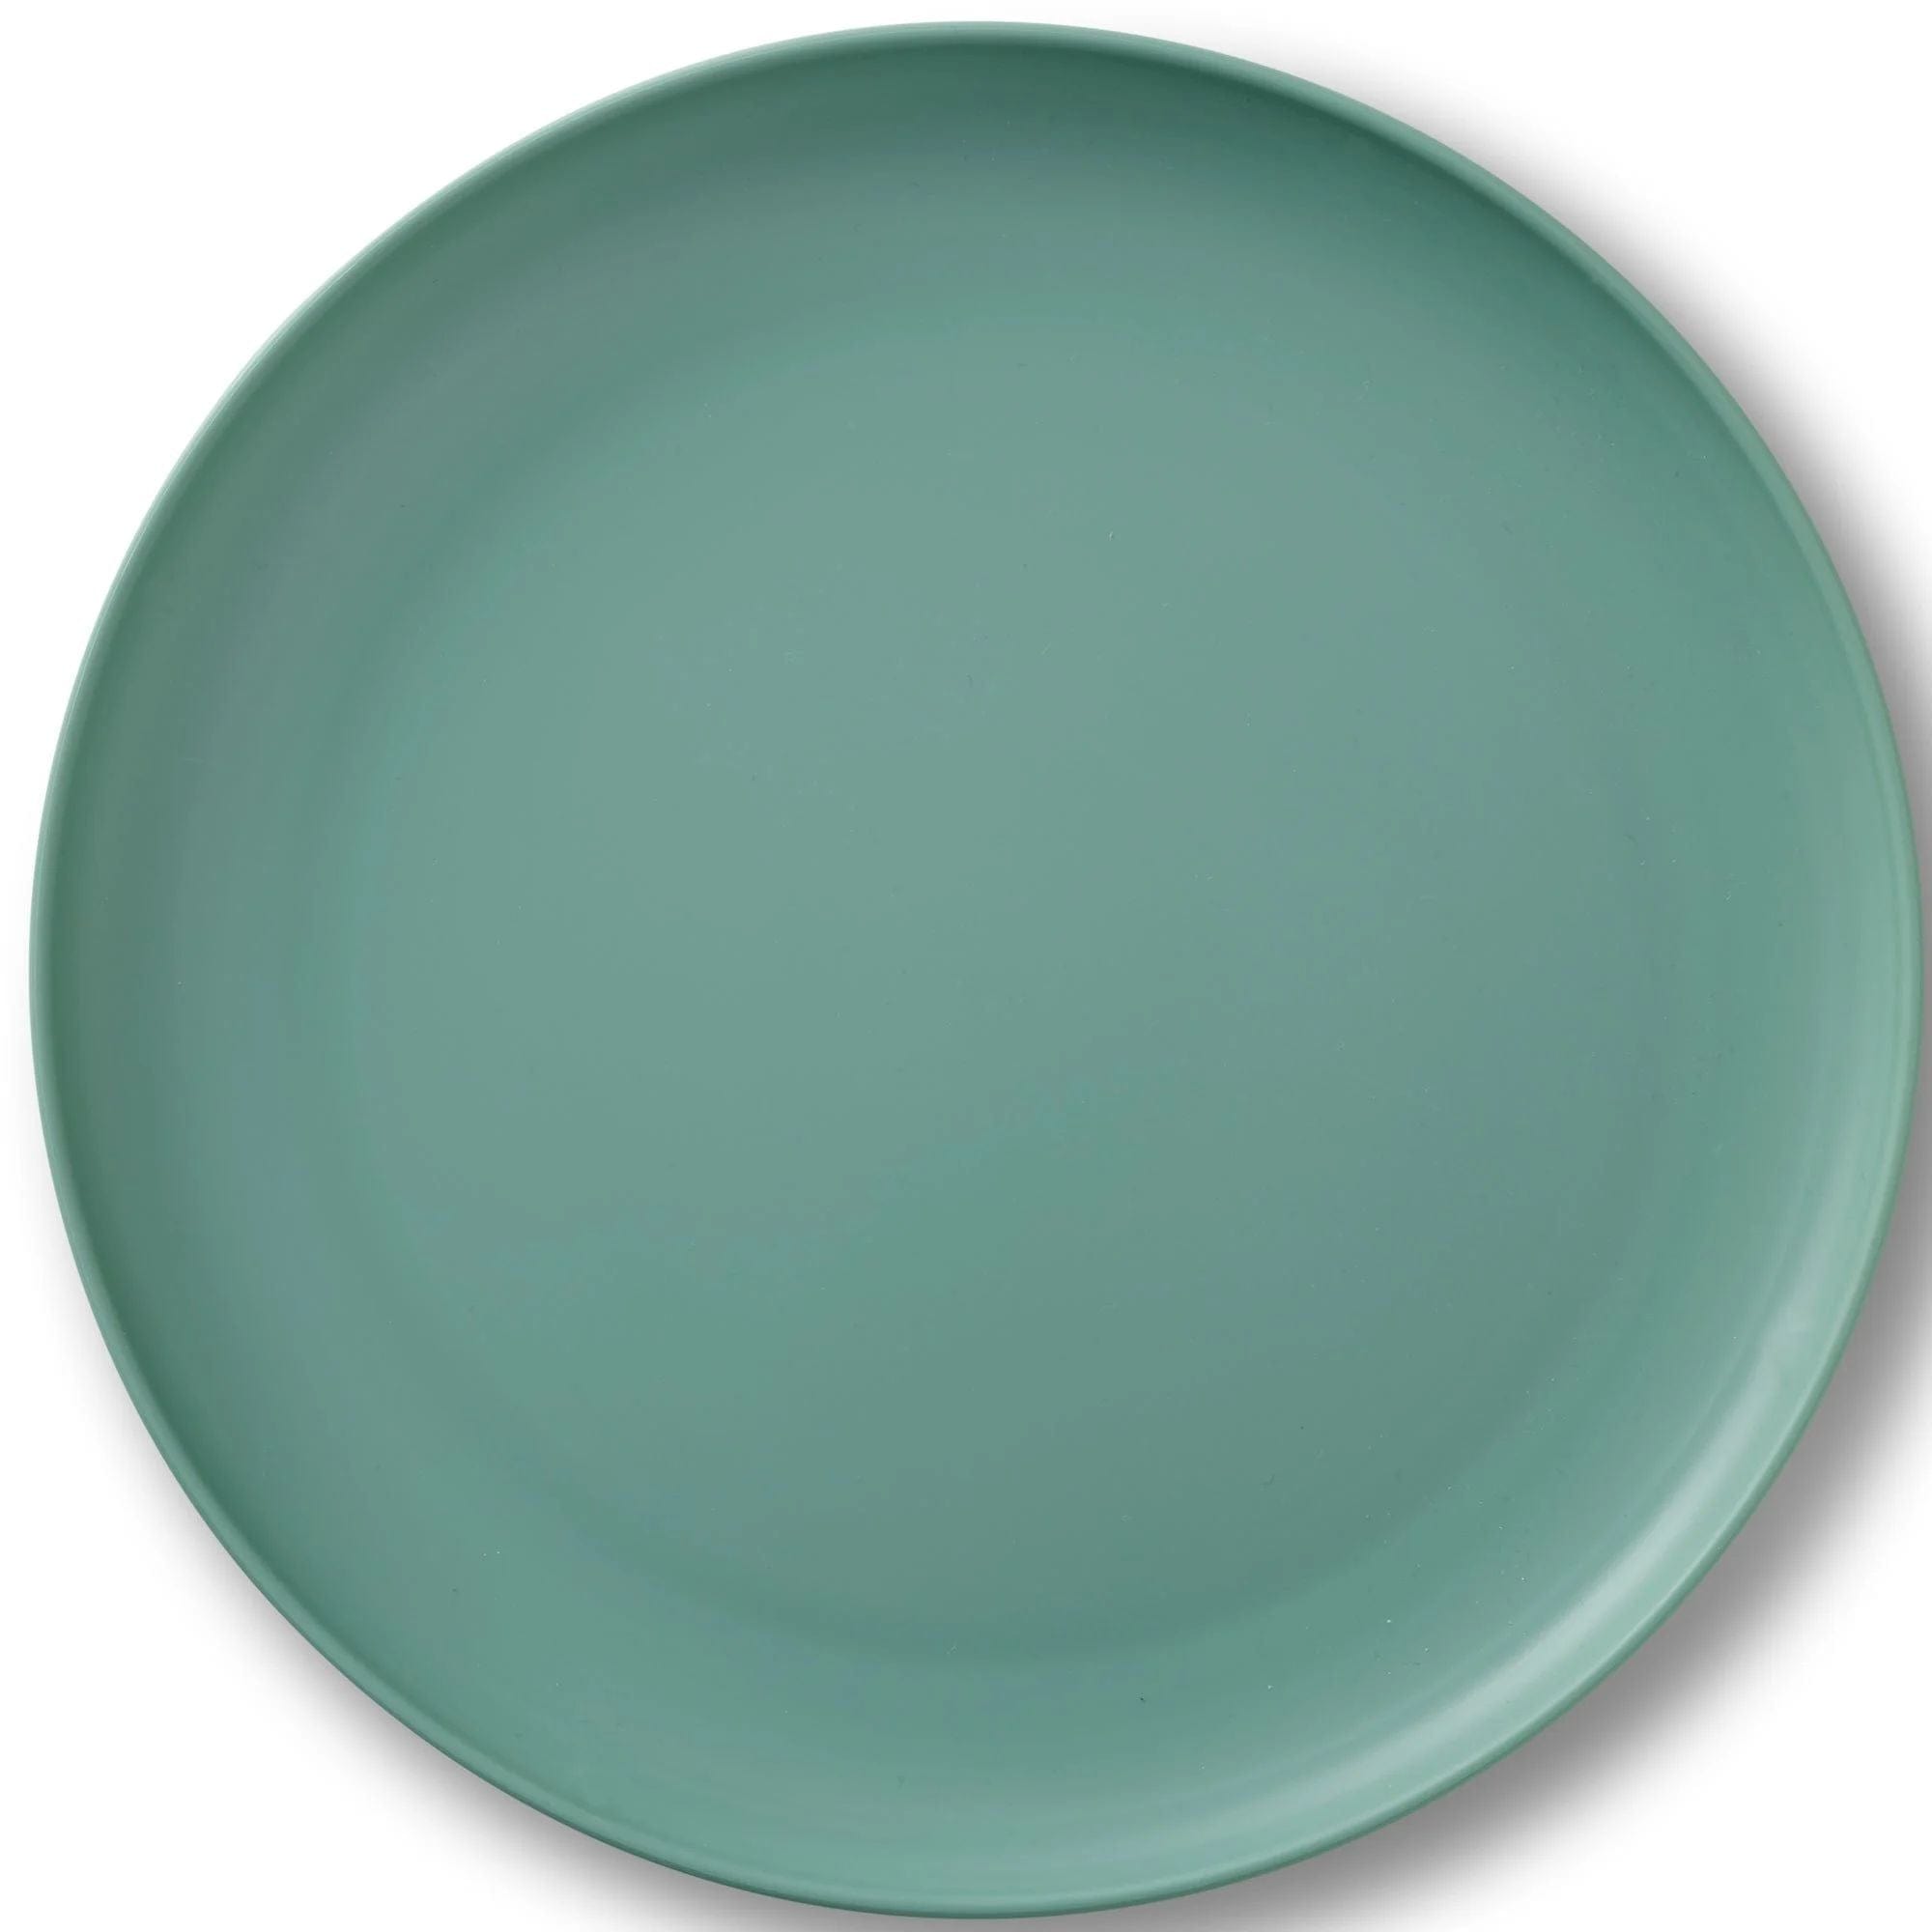 Rosendahl Grand Cru Take Plate Ø26 cm dammig grön, 2 st.